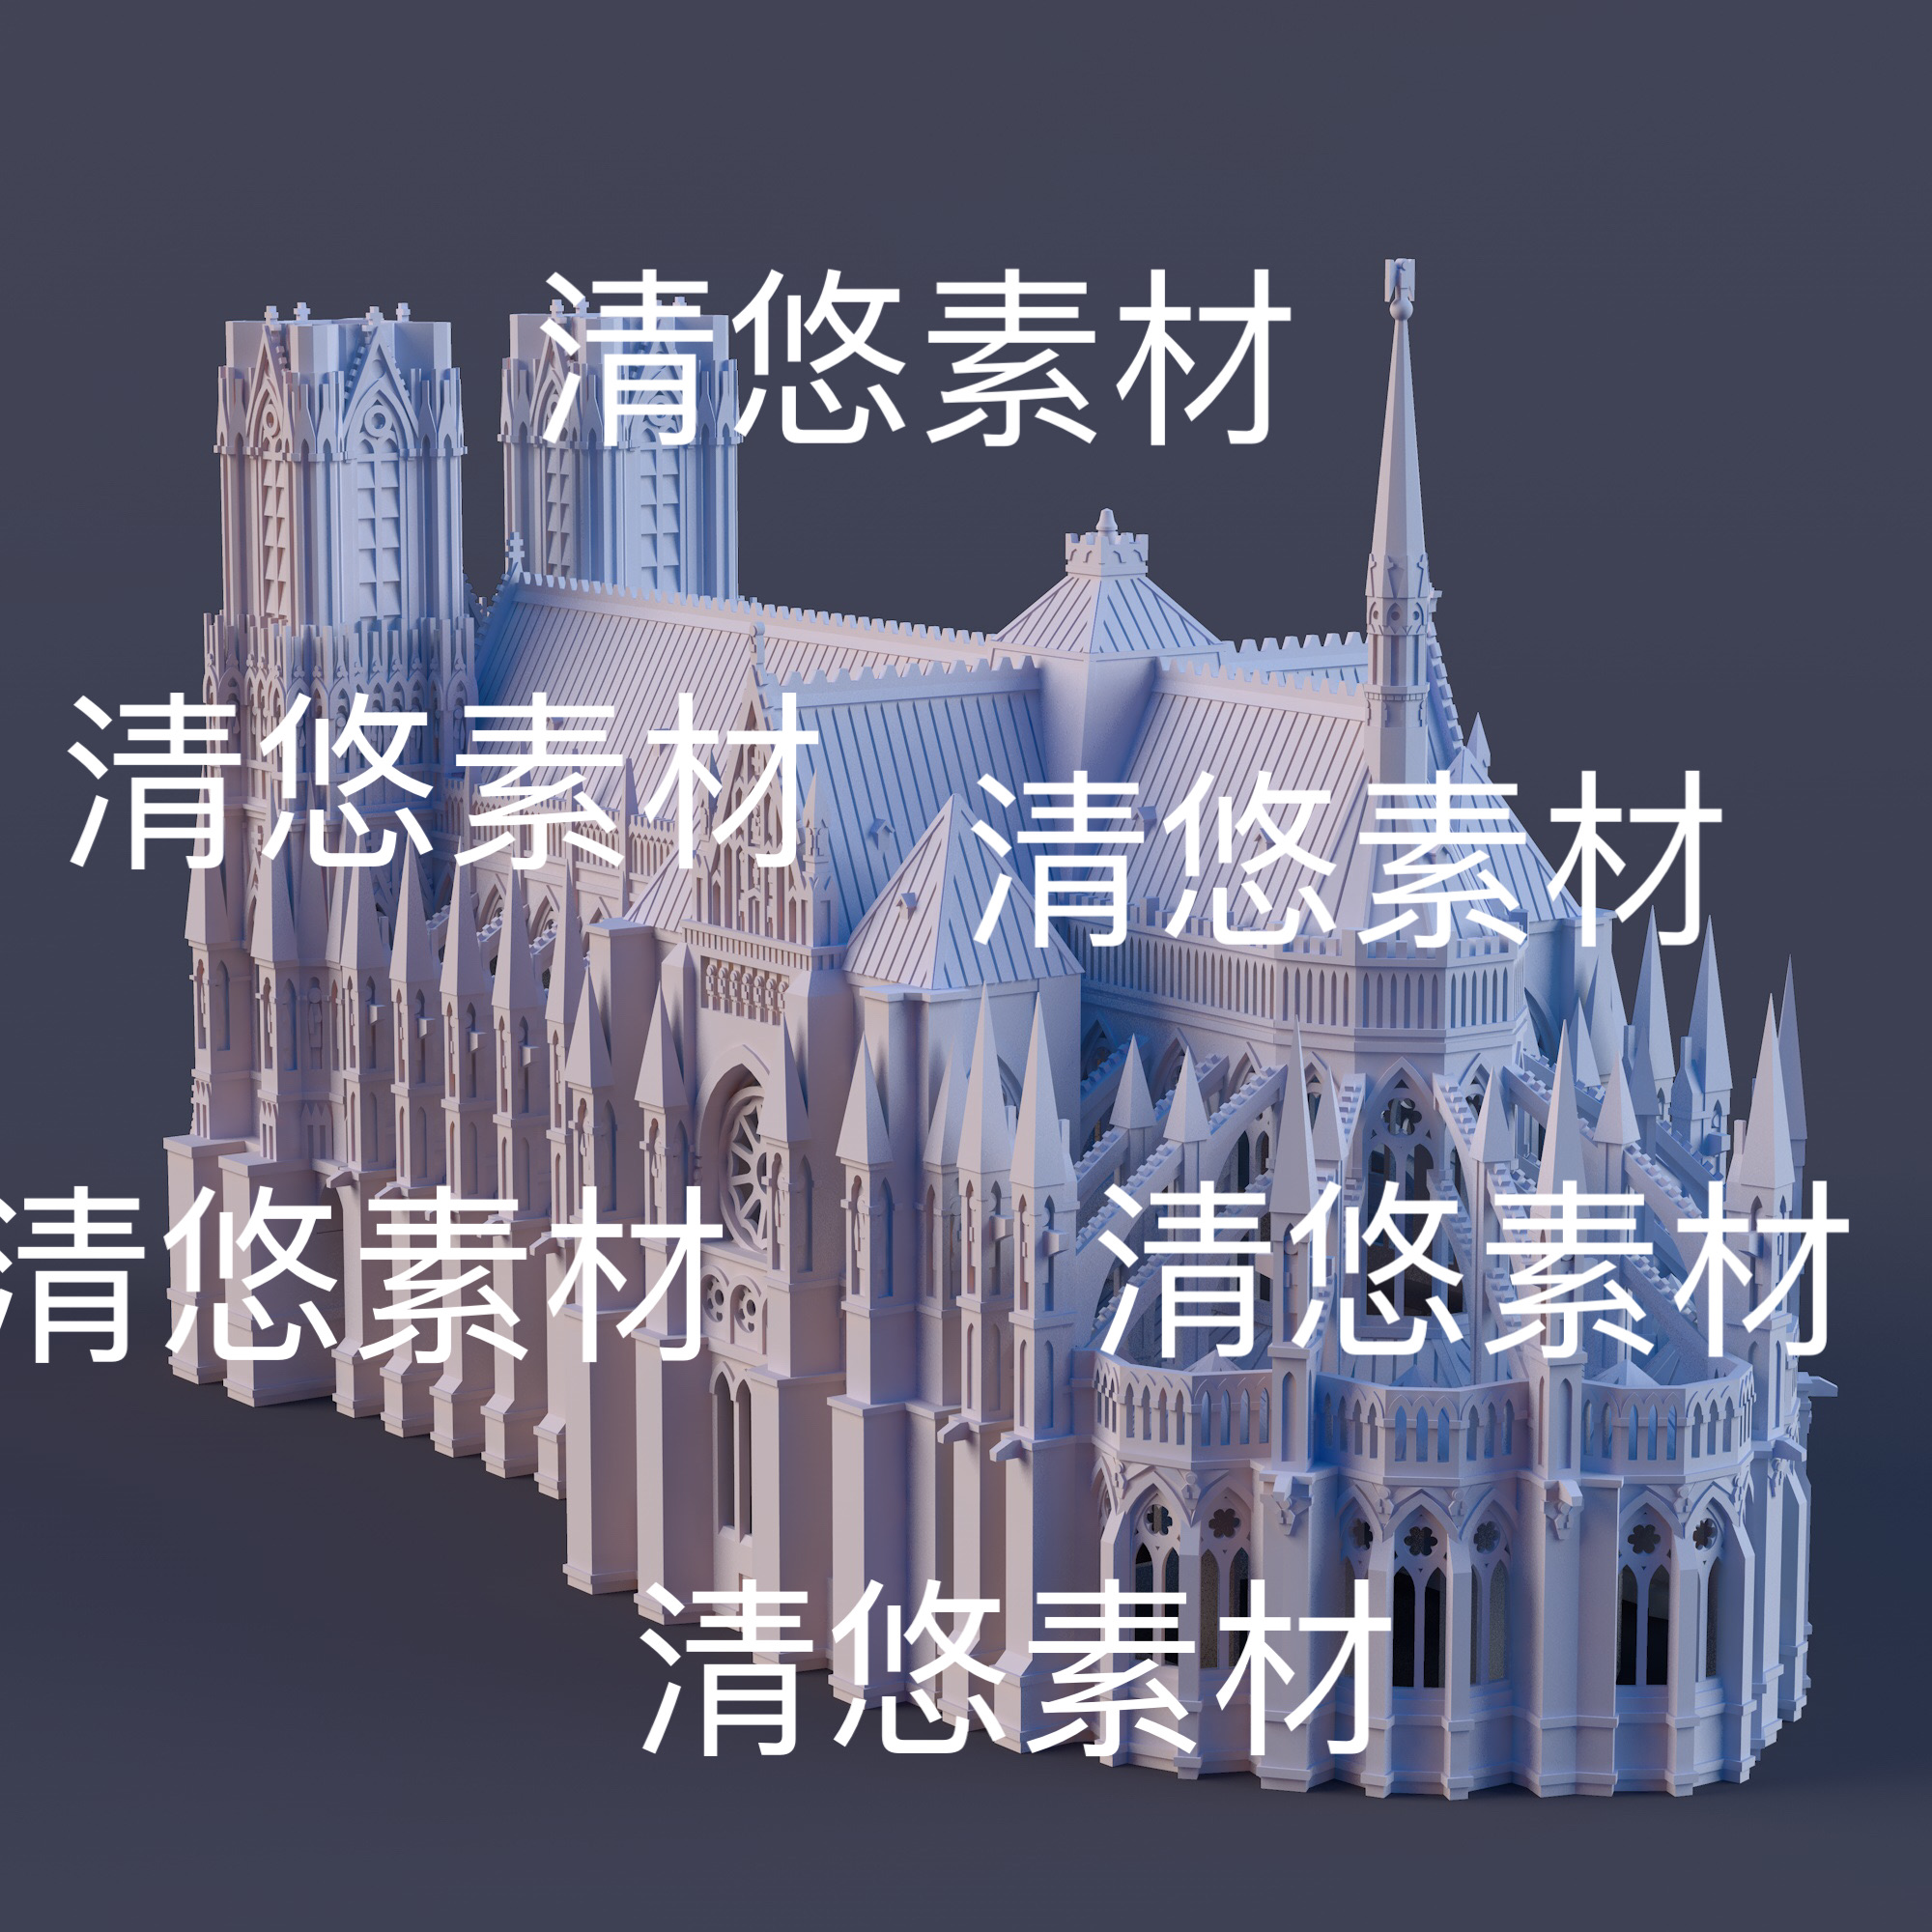 c4d fbx obj格式欧式教堂城堡建筑模型文件非实物D964